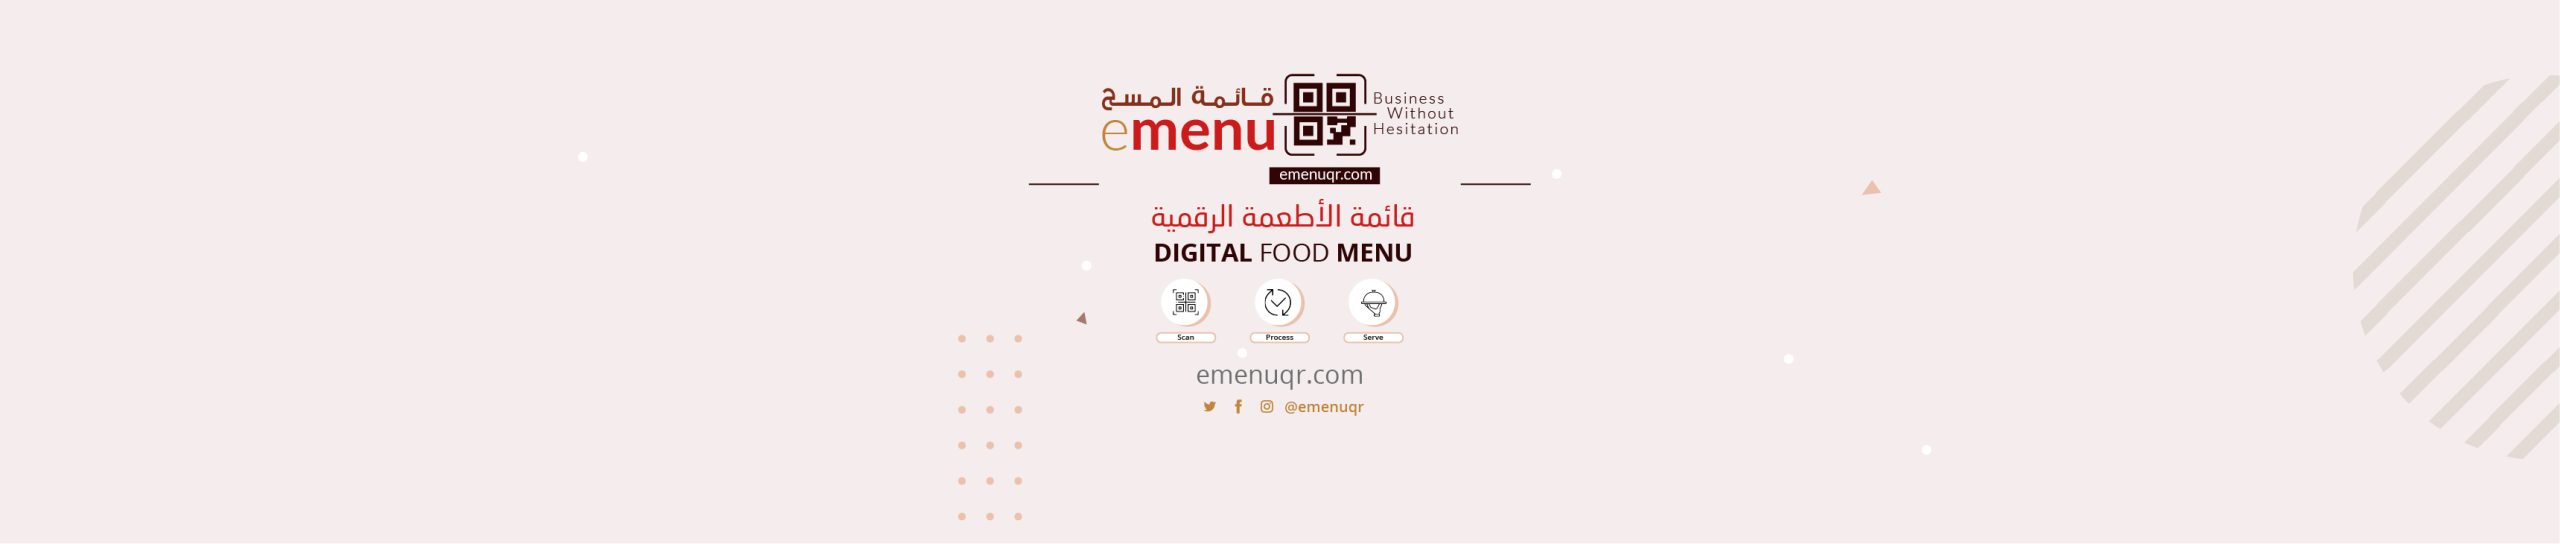 Digital Food Menu Sample